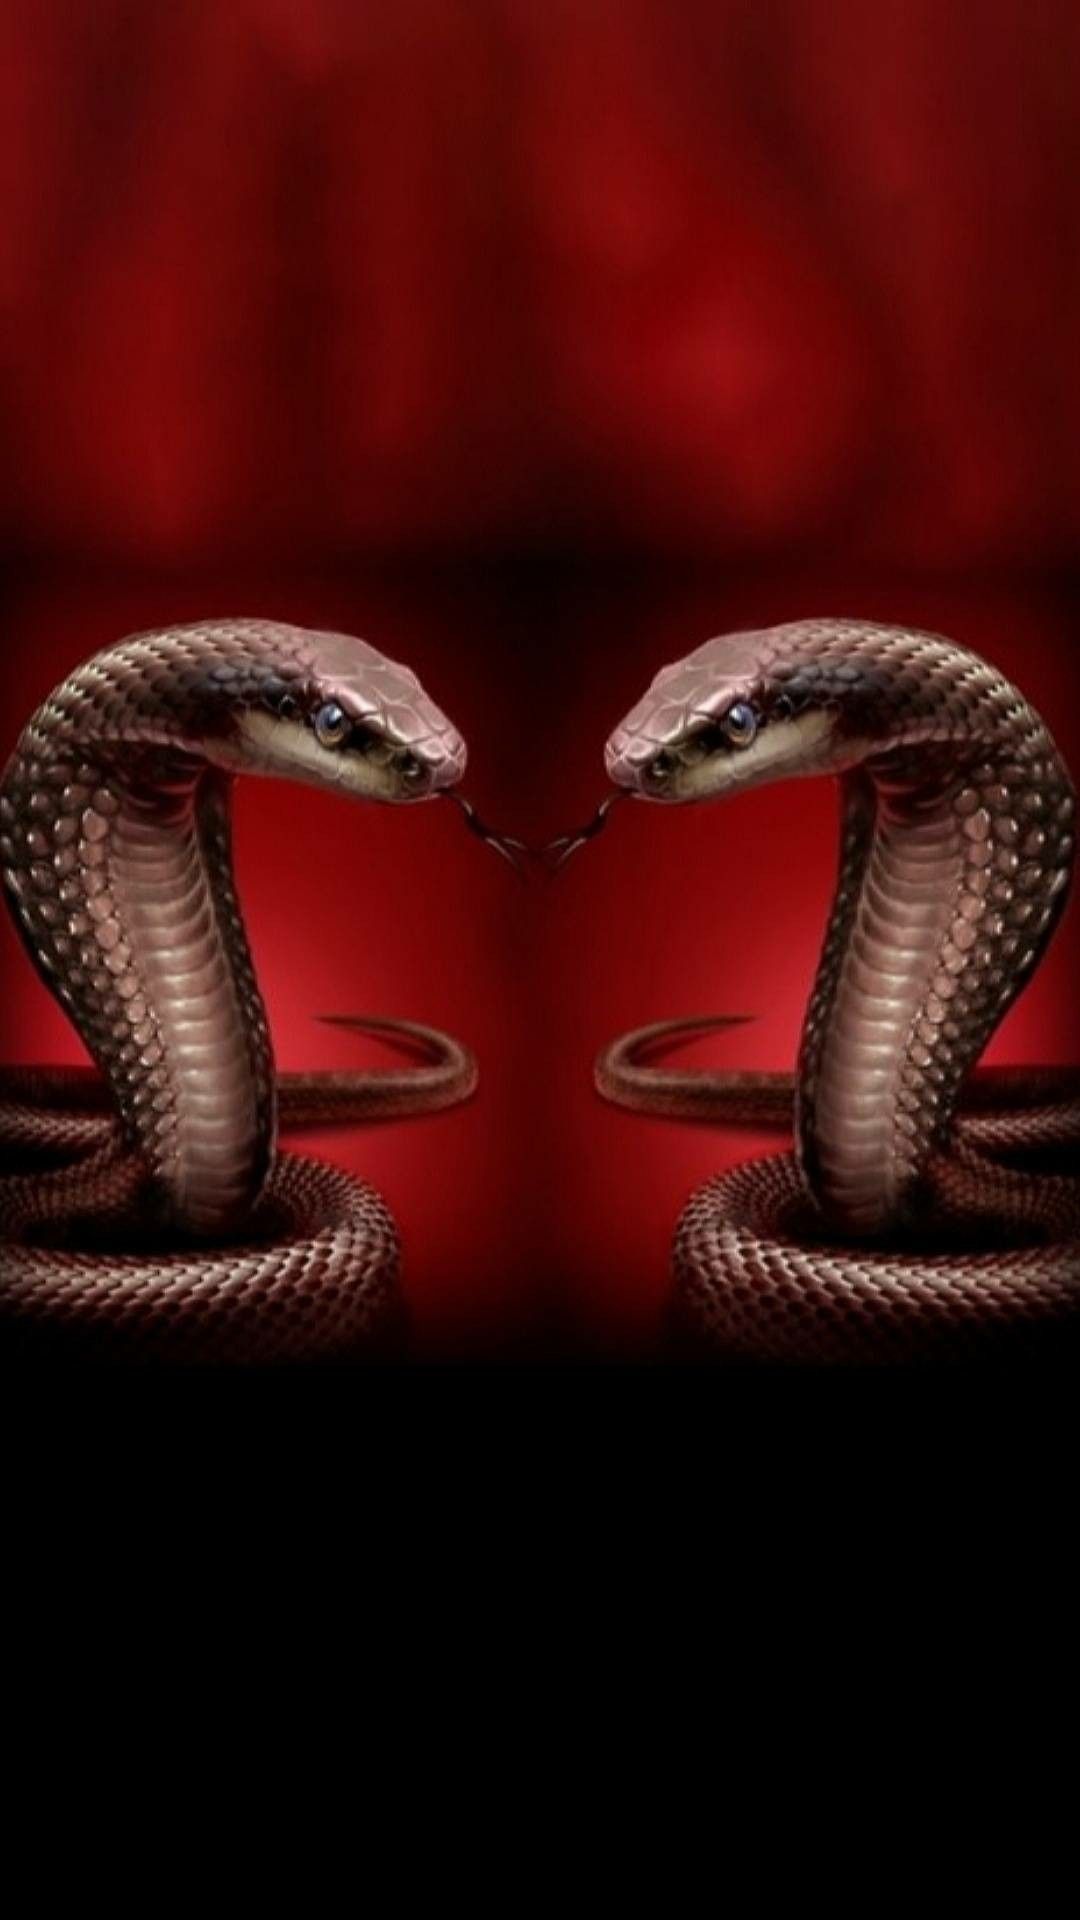 Tổng hợp hình ảnh về loài rắn đẹp nhất - [Kích thước hình ảnh: 1080x1920 px]